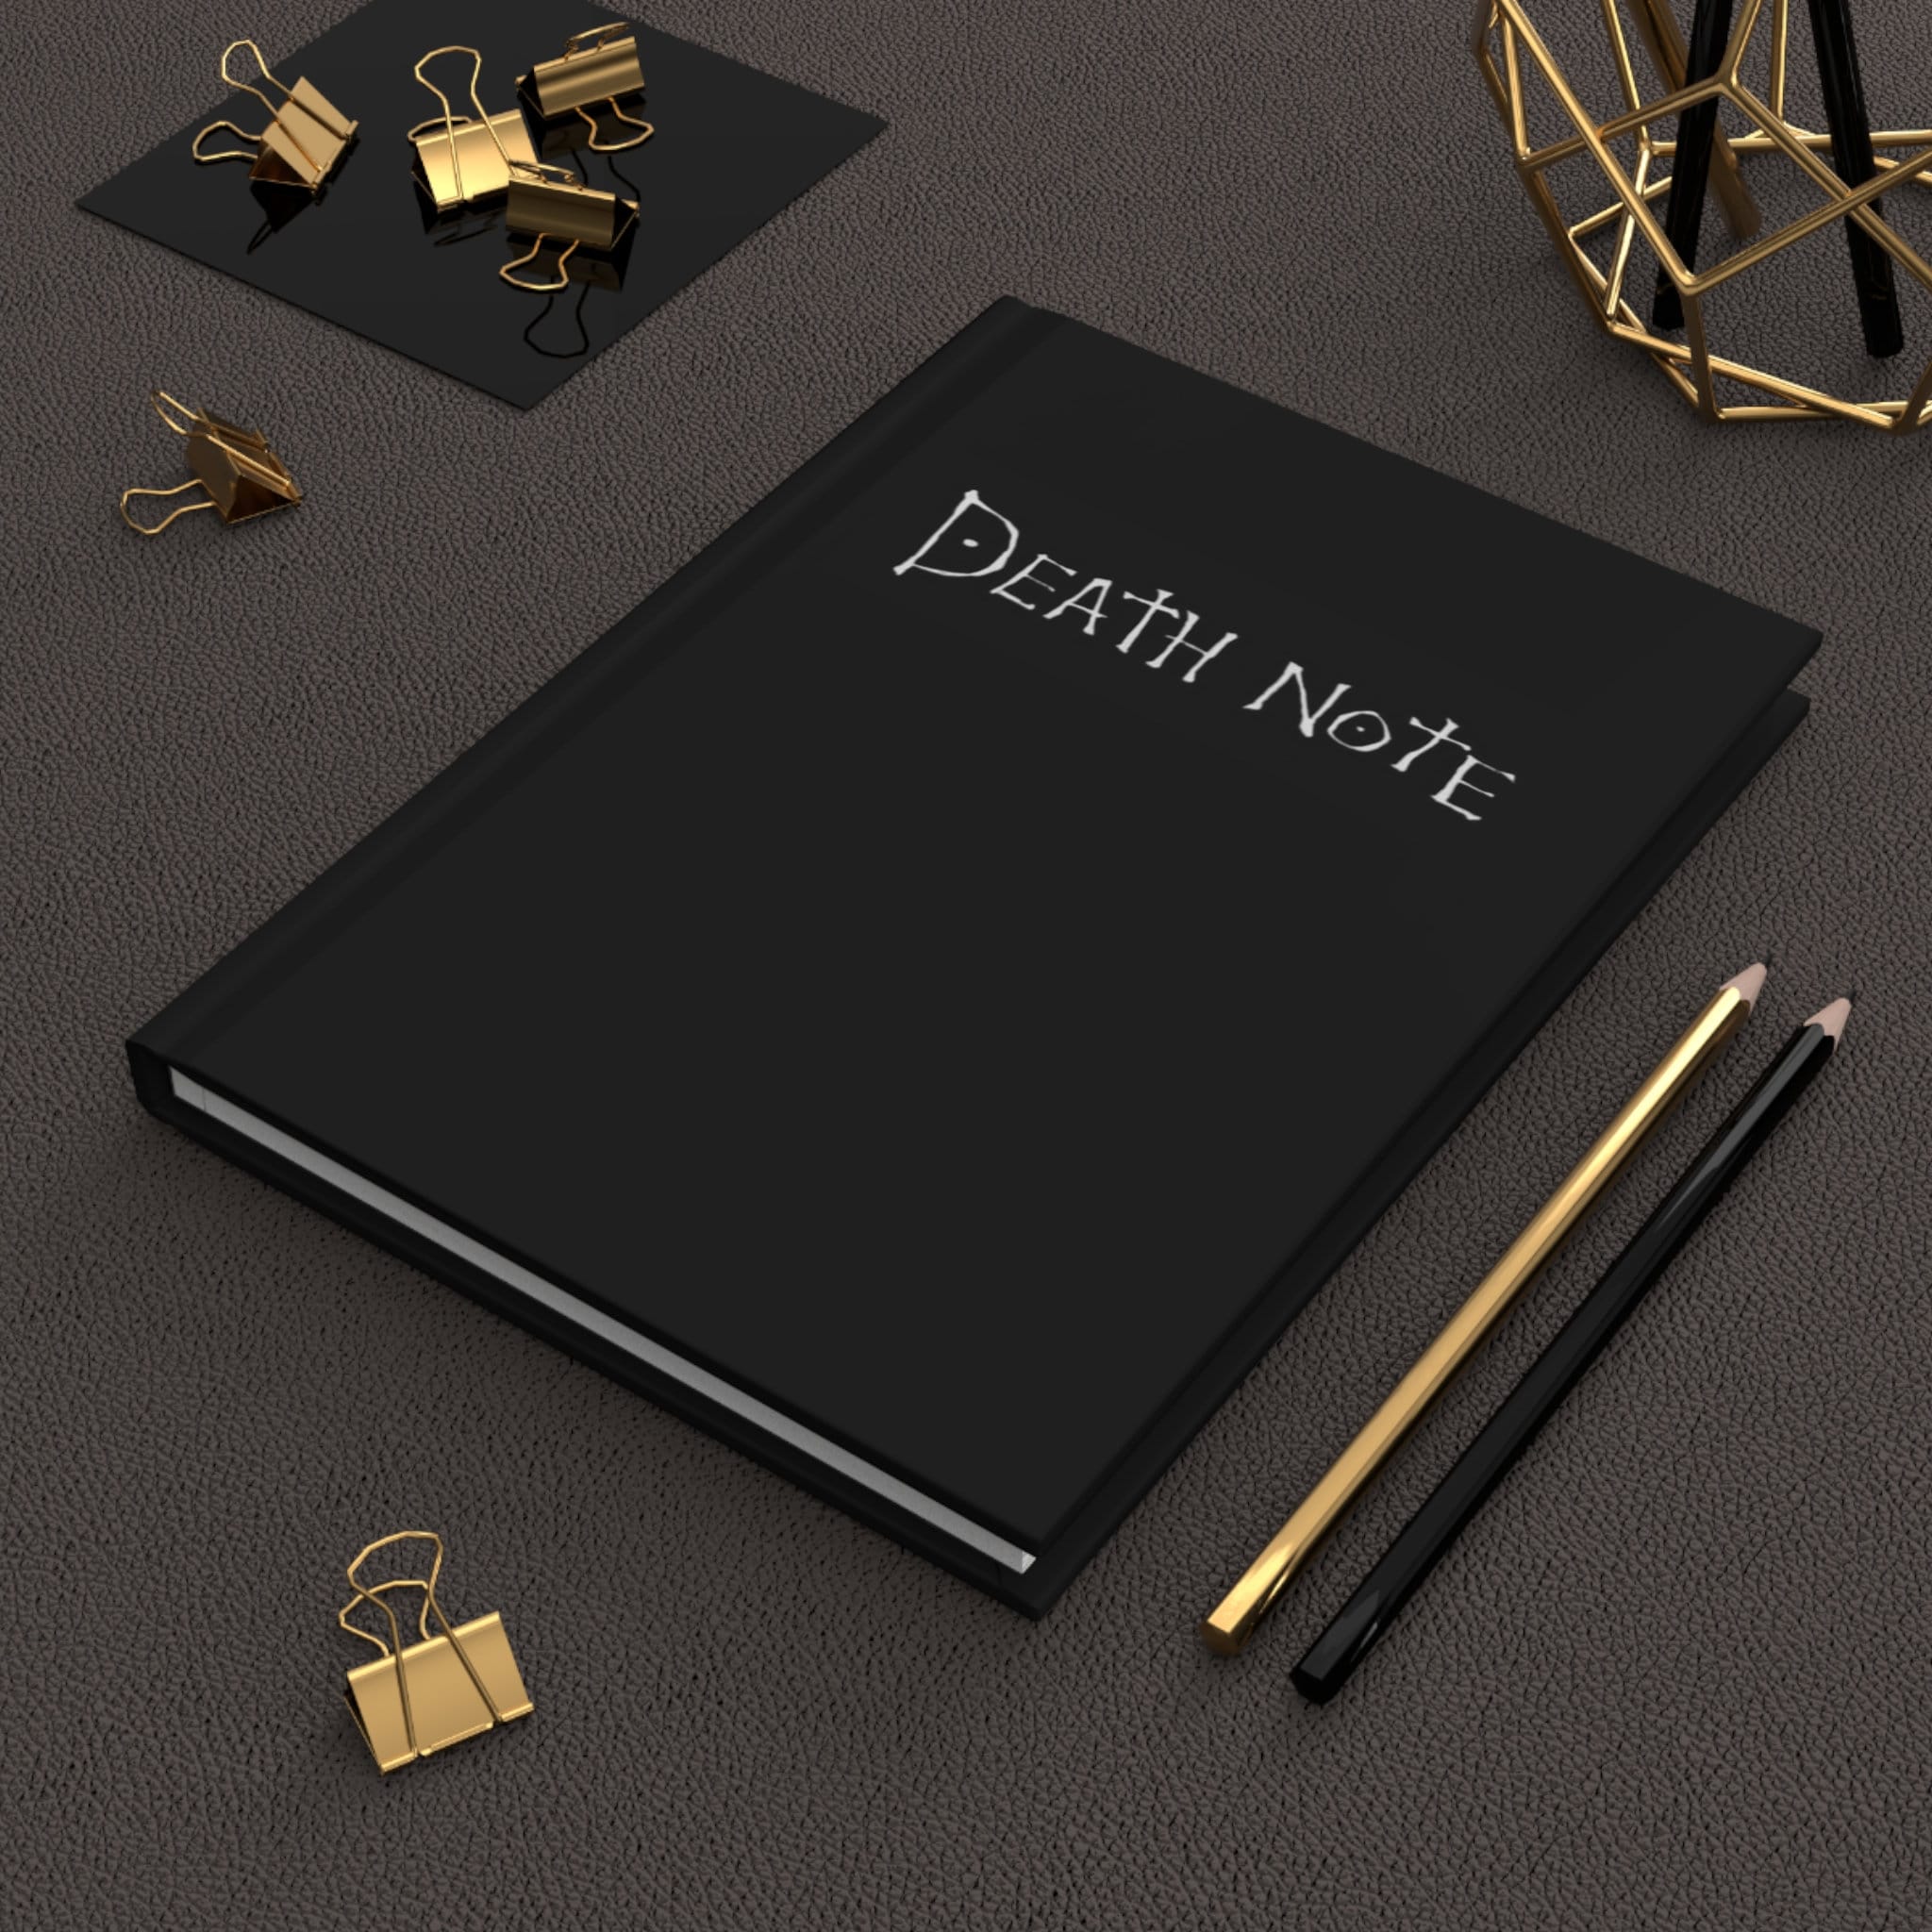 Manga Death Note Book Replica with original rules